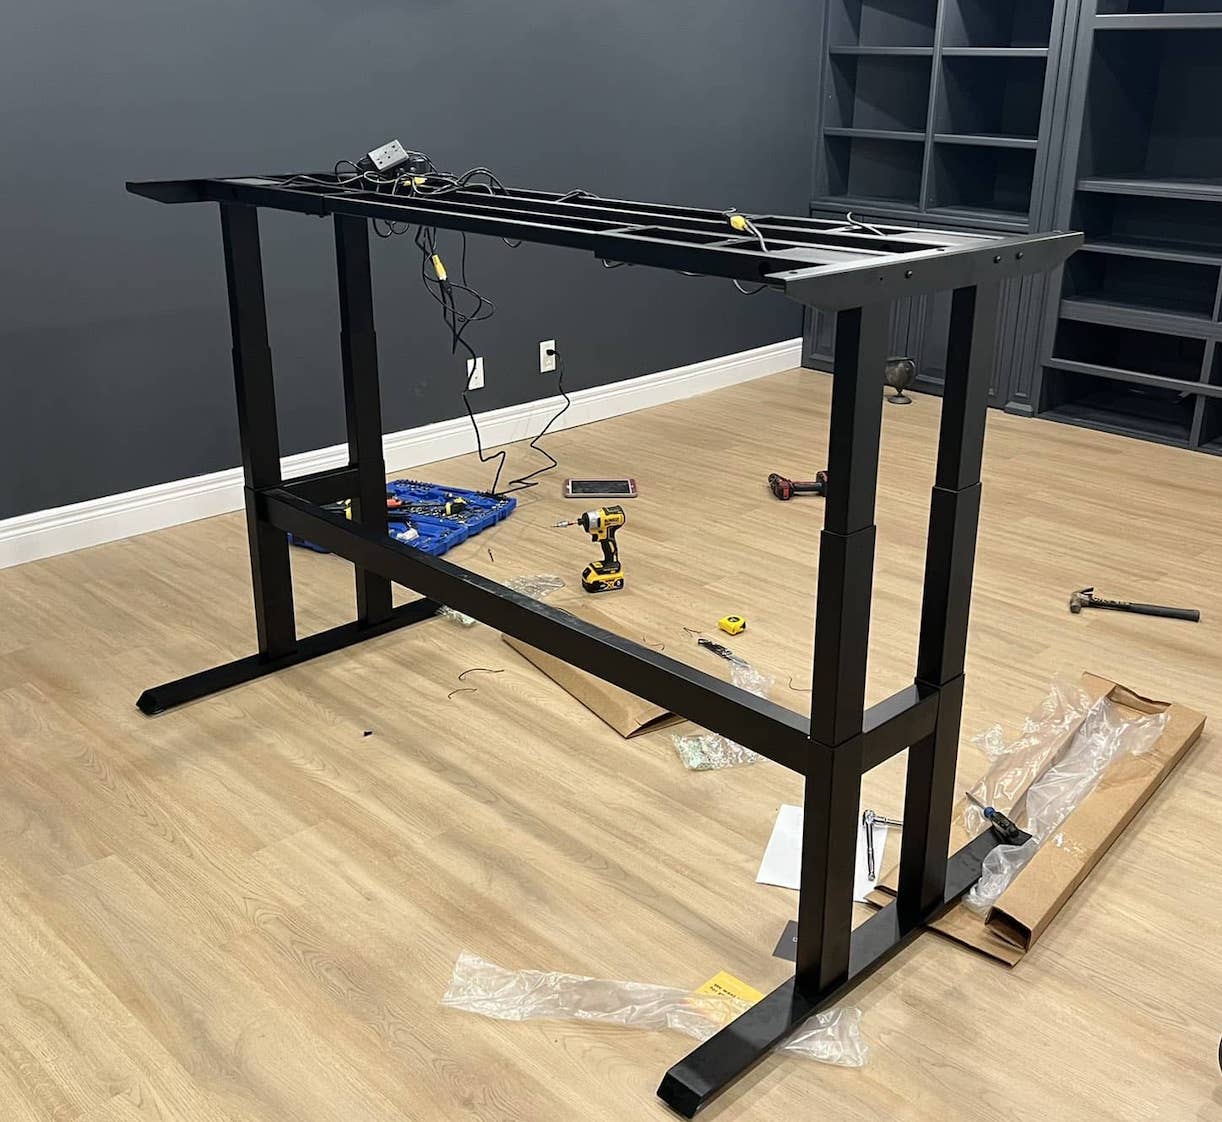 set up 4-leg standing desk